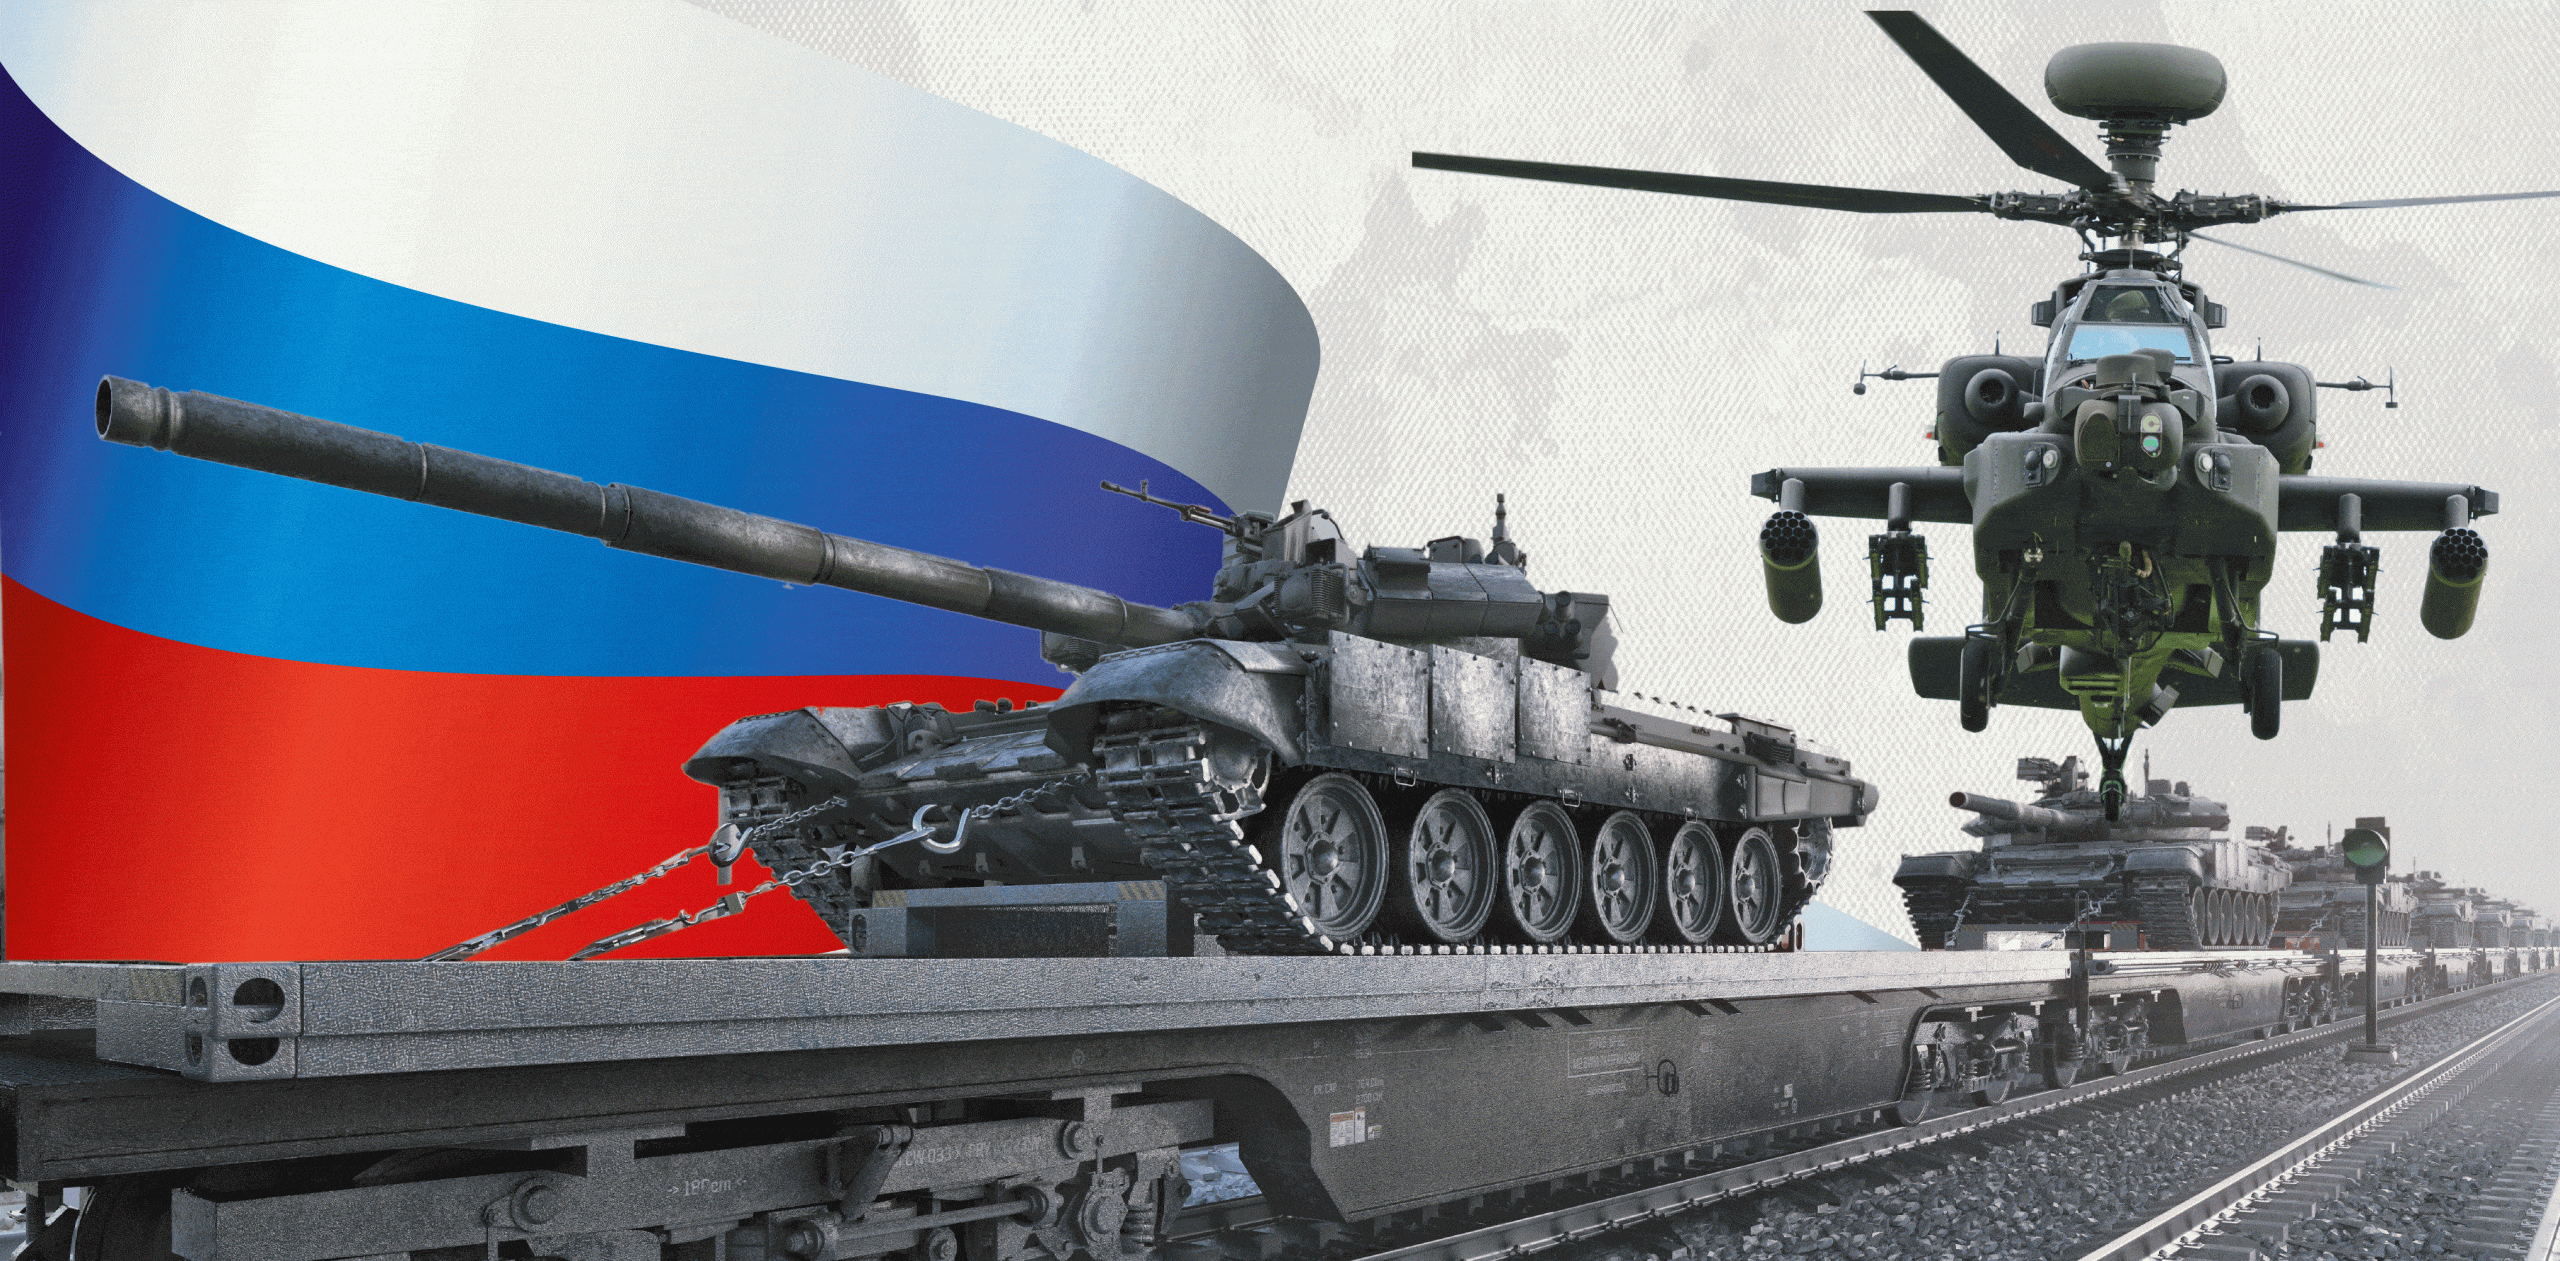 روسيا تزيد من ميزانية الدفاع والمجمع العسكري في عام 2024 كيف تمكنت من ذلك ؟